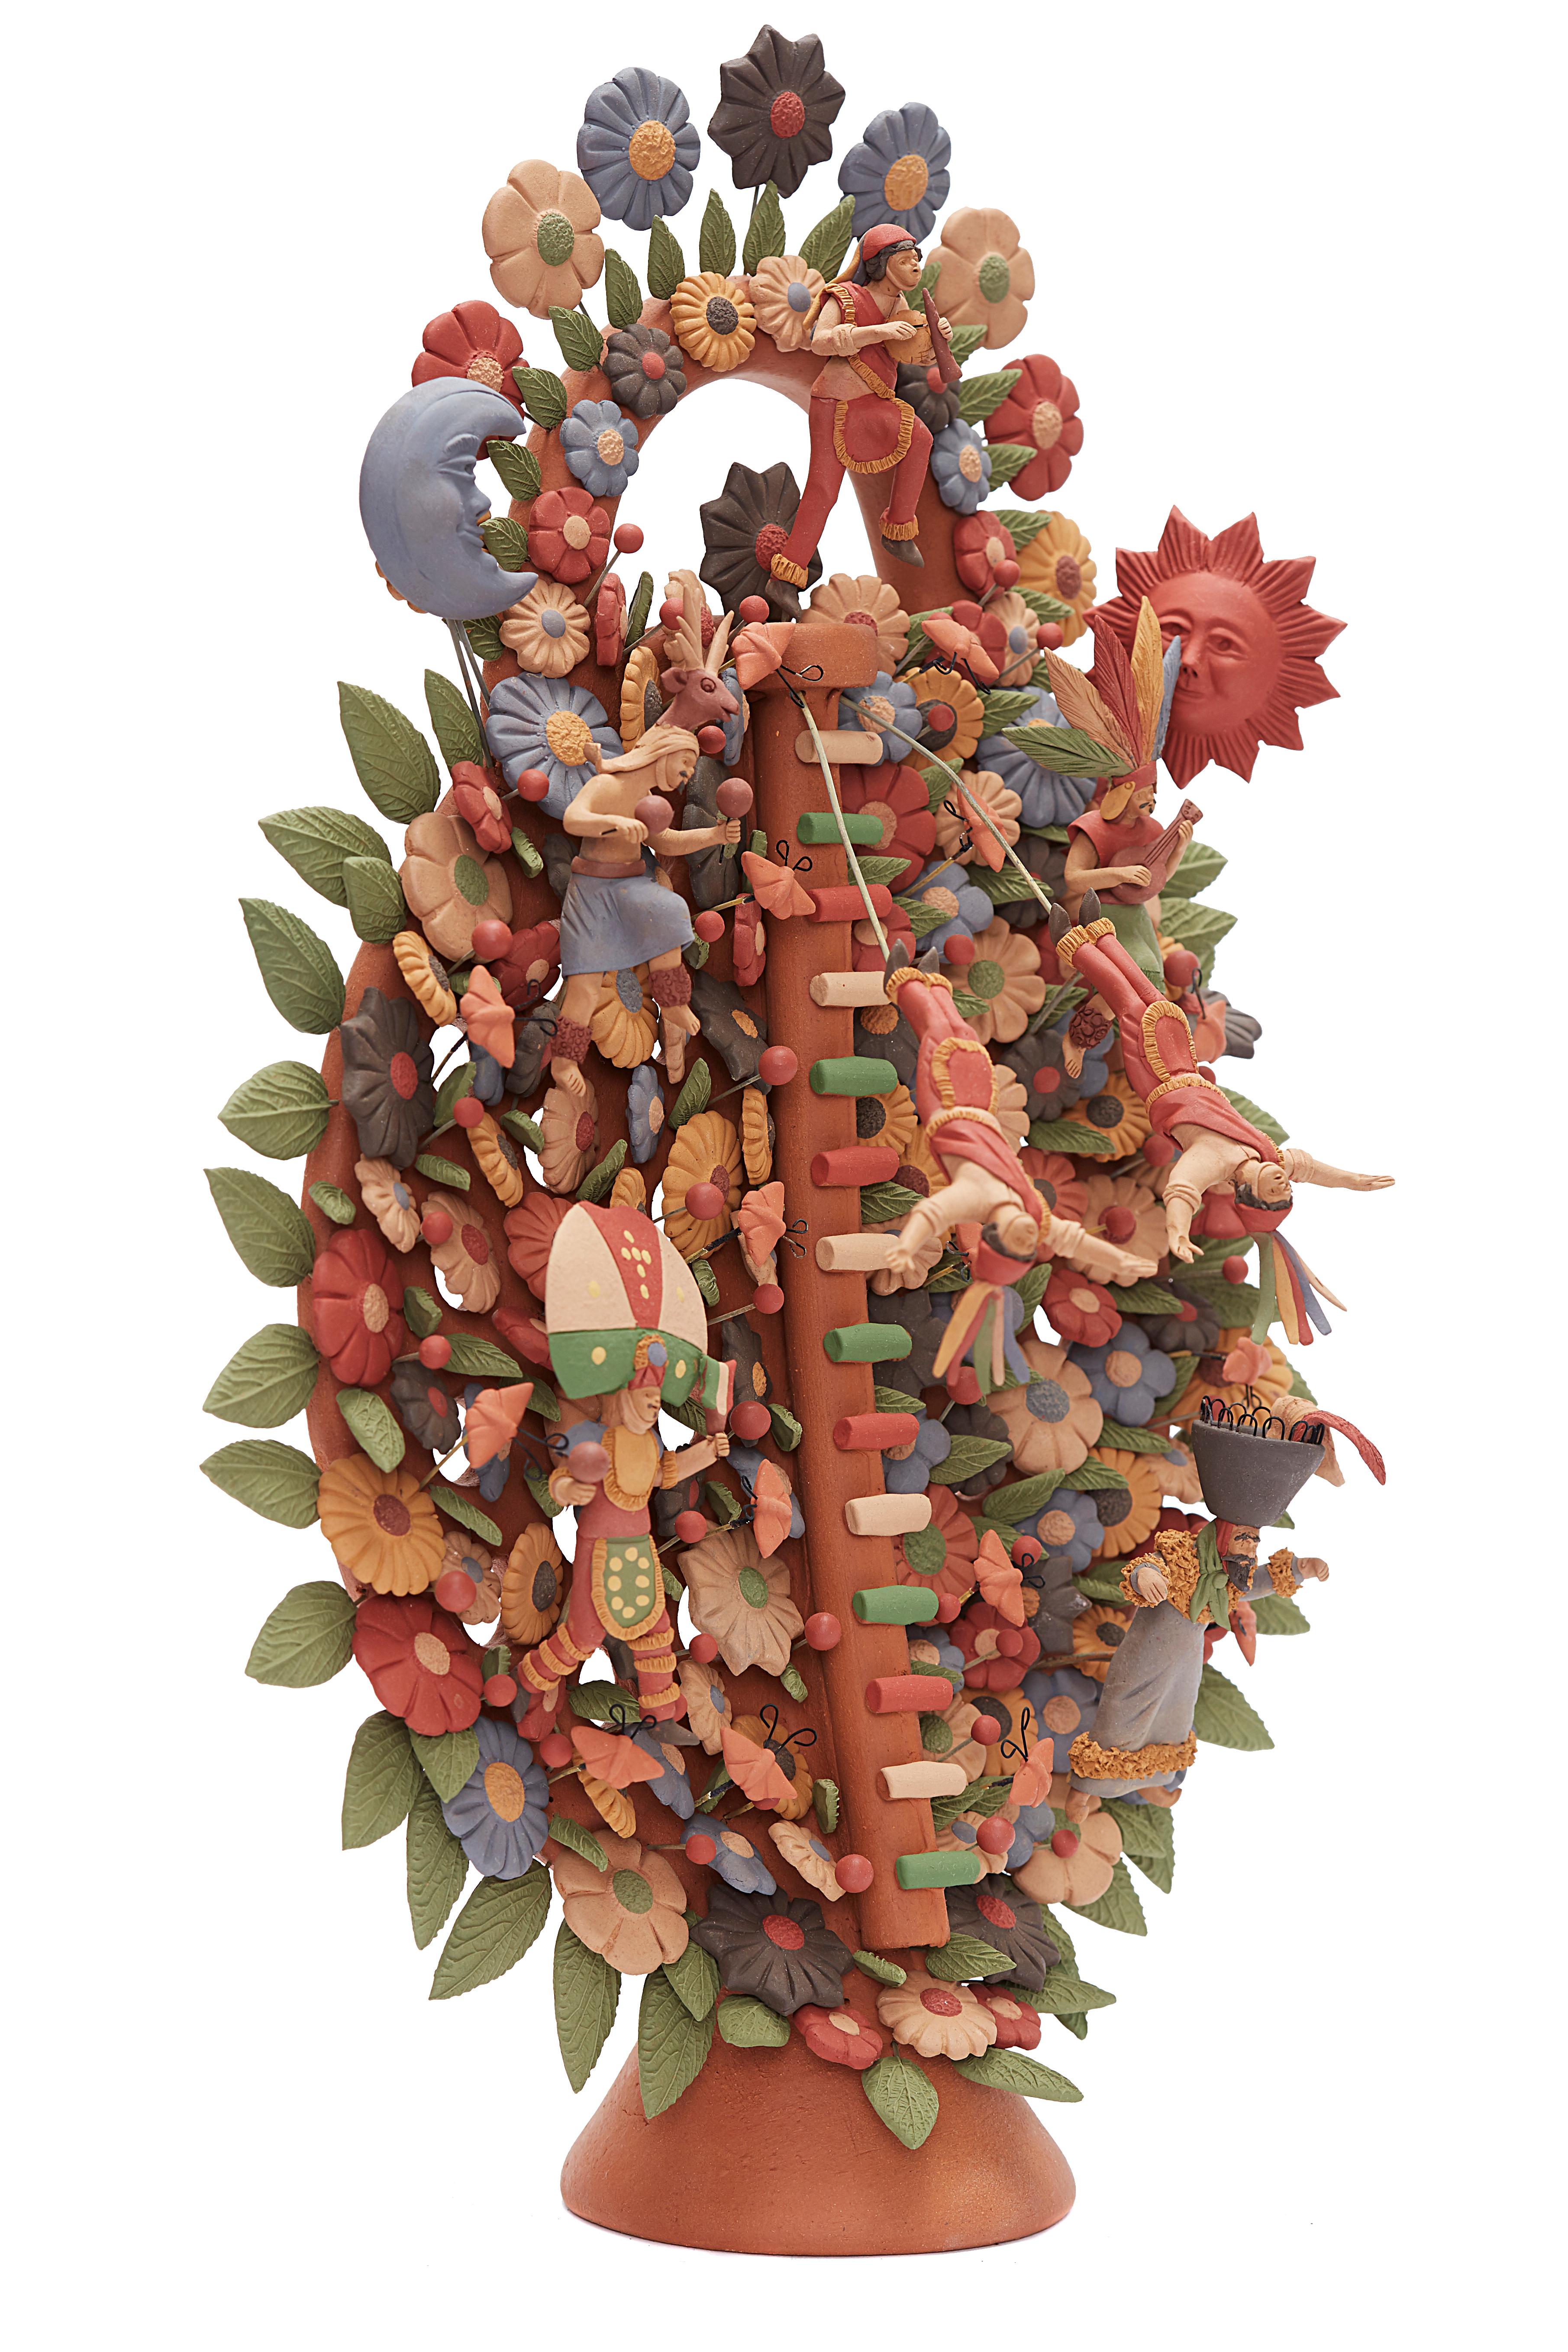 Arbol de Danzantes - Dancers Tree / Ceramics Mexican Folk Art Clay 11